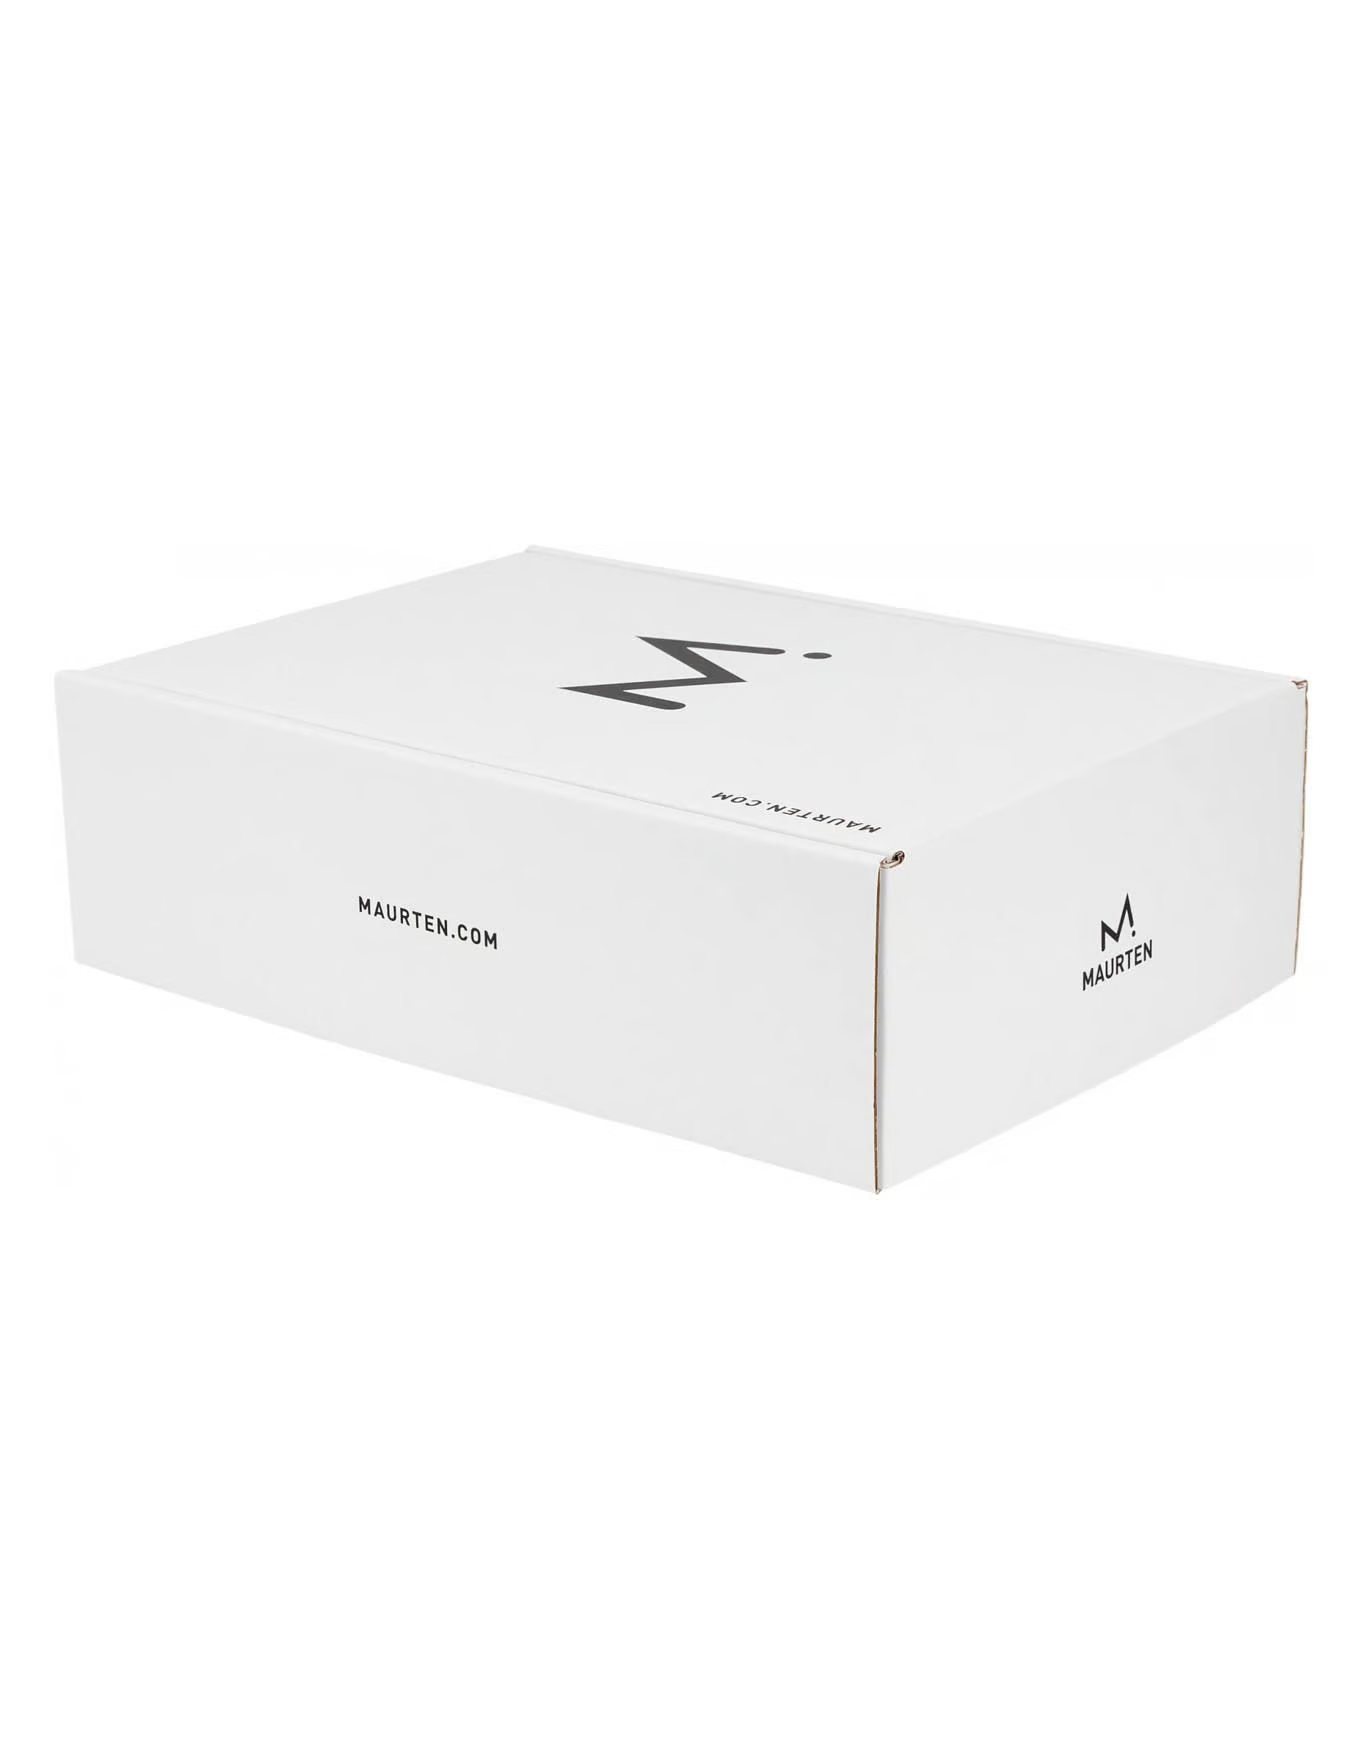 Maurten Starter Kit for Running - Selection of 16 servings